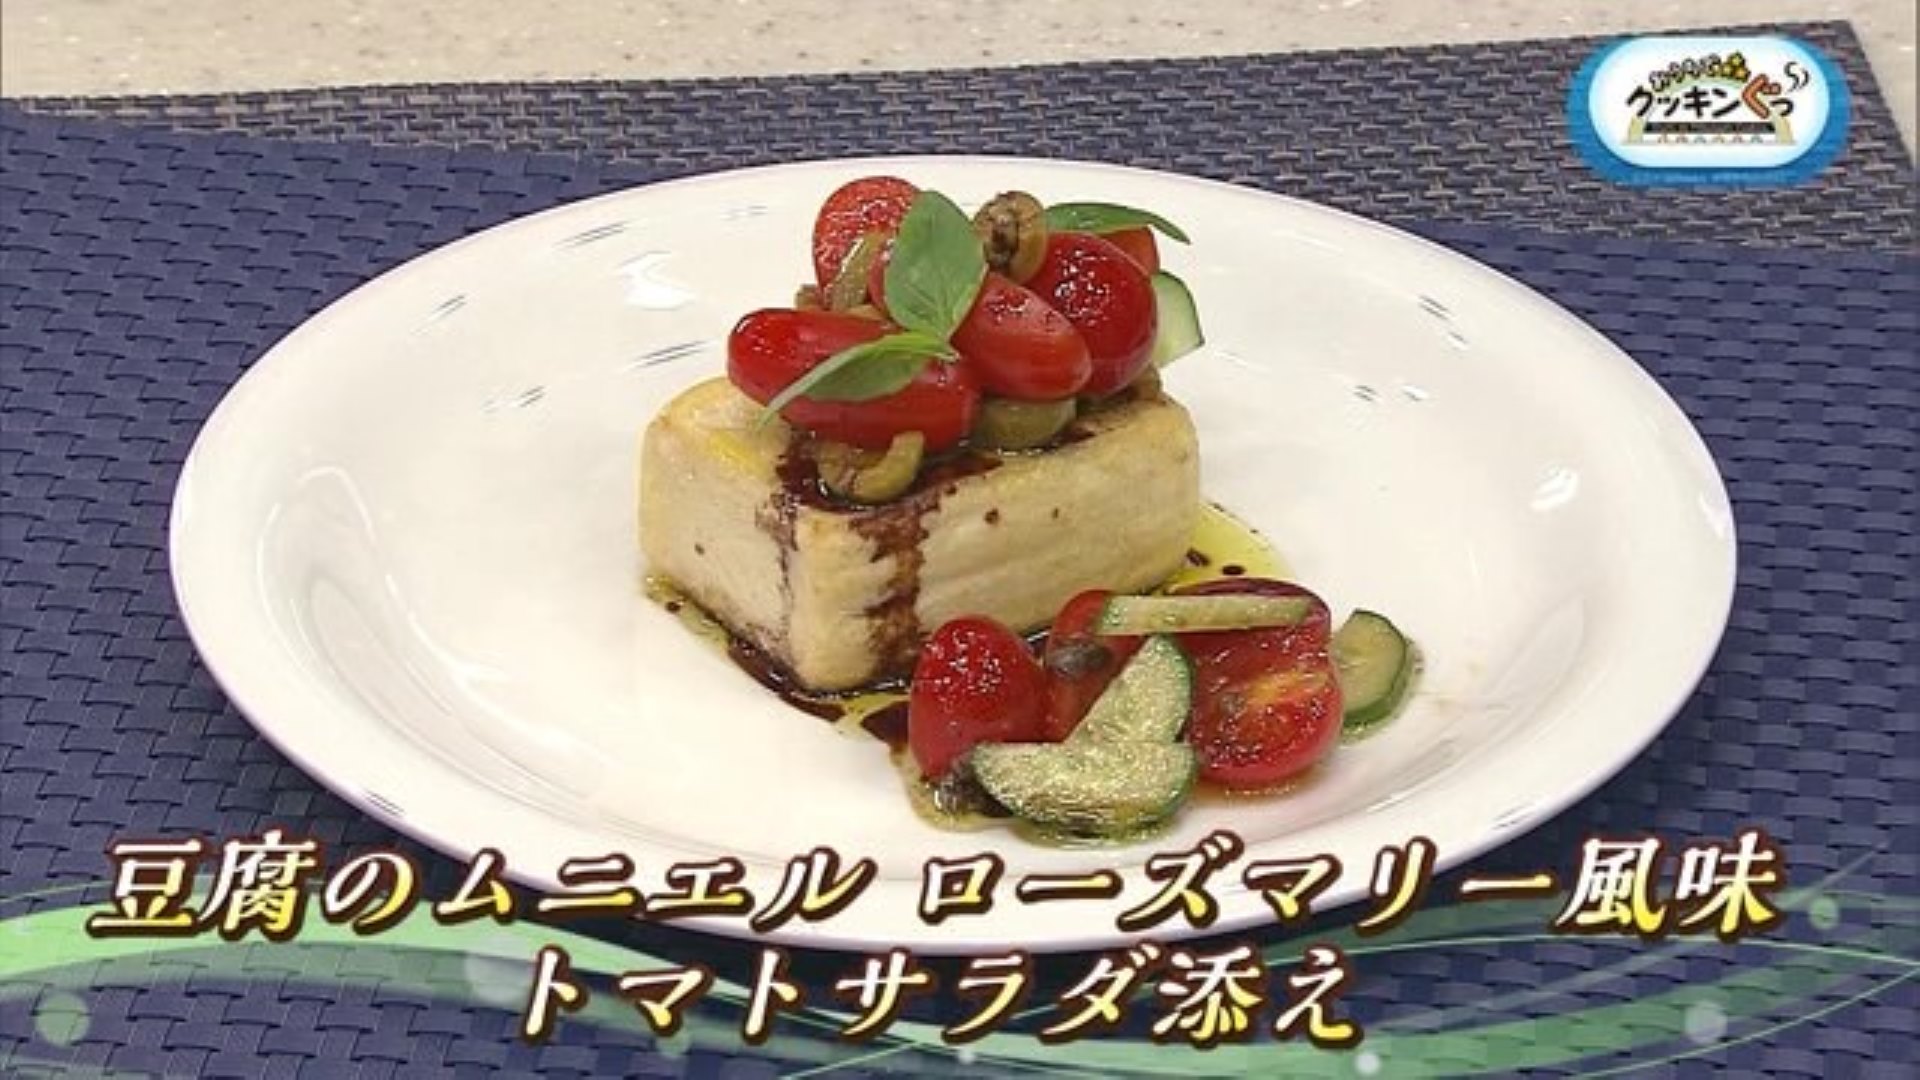 「豆腐のムニエル ローズマリー風味 トマトサラダ添え」アレンジいろいろ♪豆腐料理